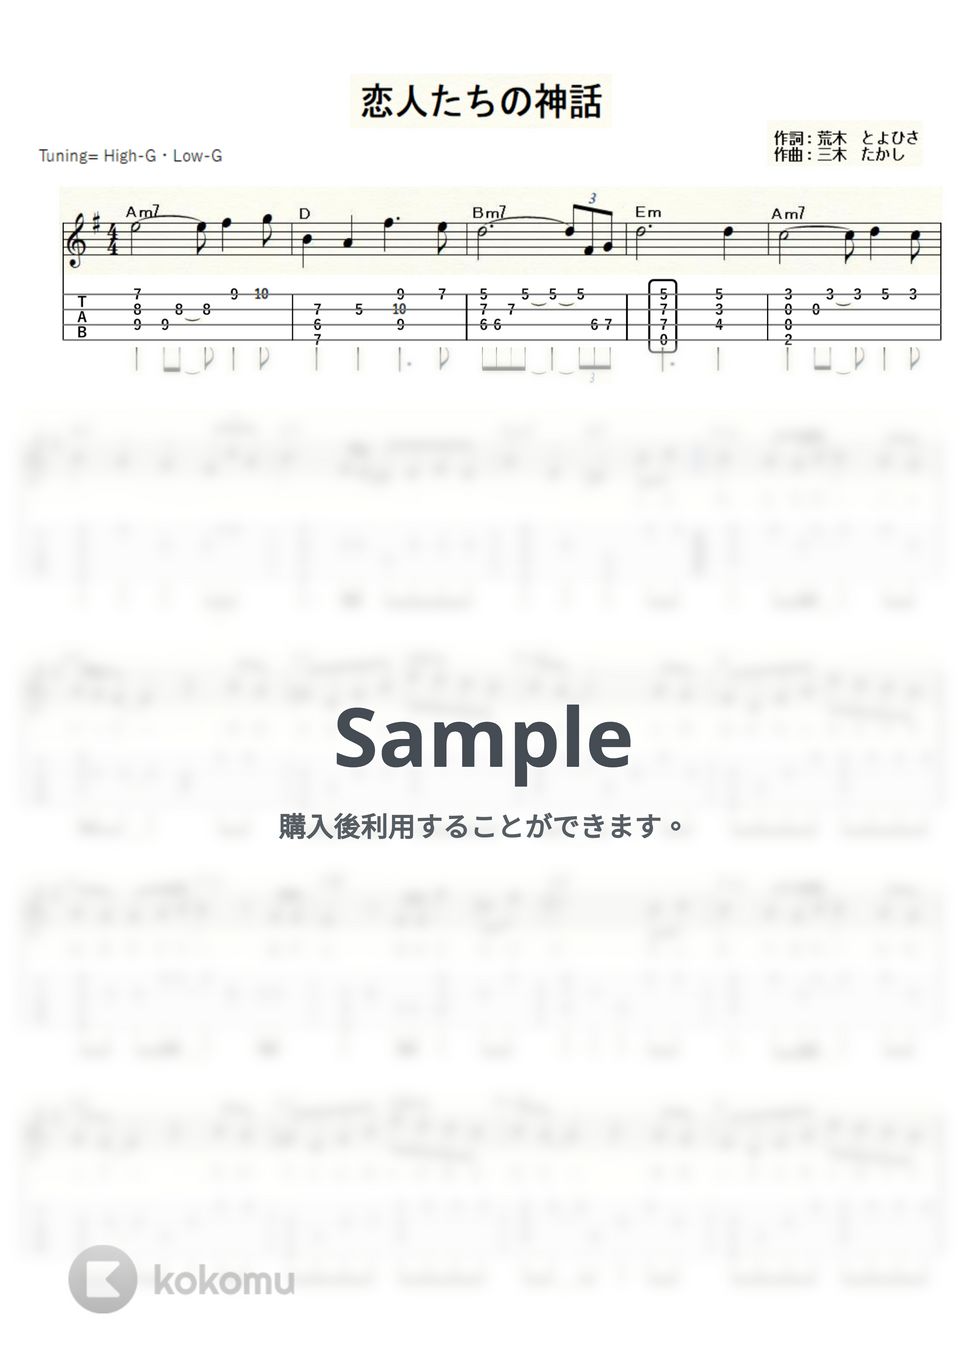 テレサ・テン - 恋人たちの神話 (ｳｸﾚﾚｿﾛ/High-G・Low-G/中級) by ukulelepapa